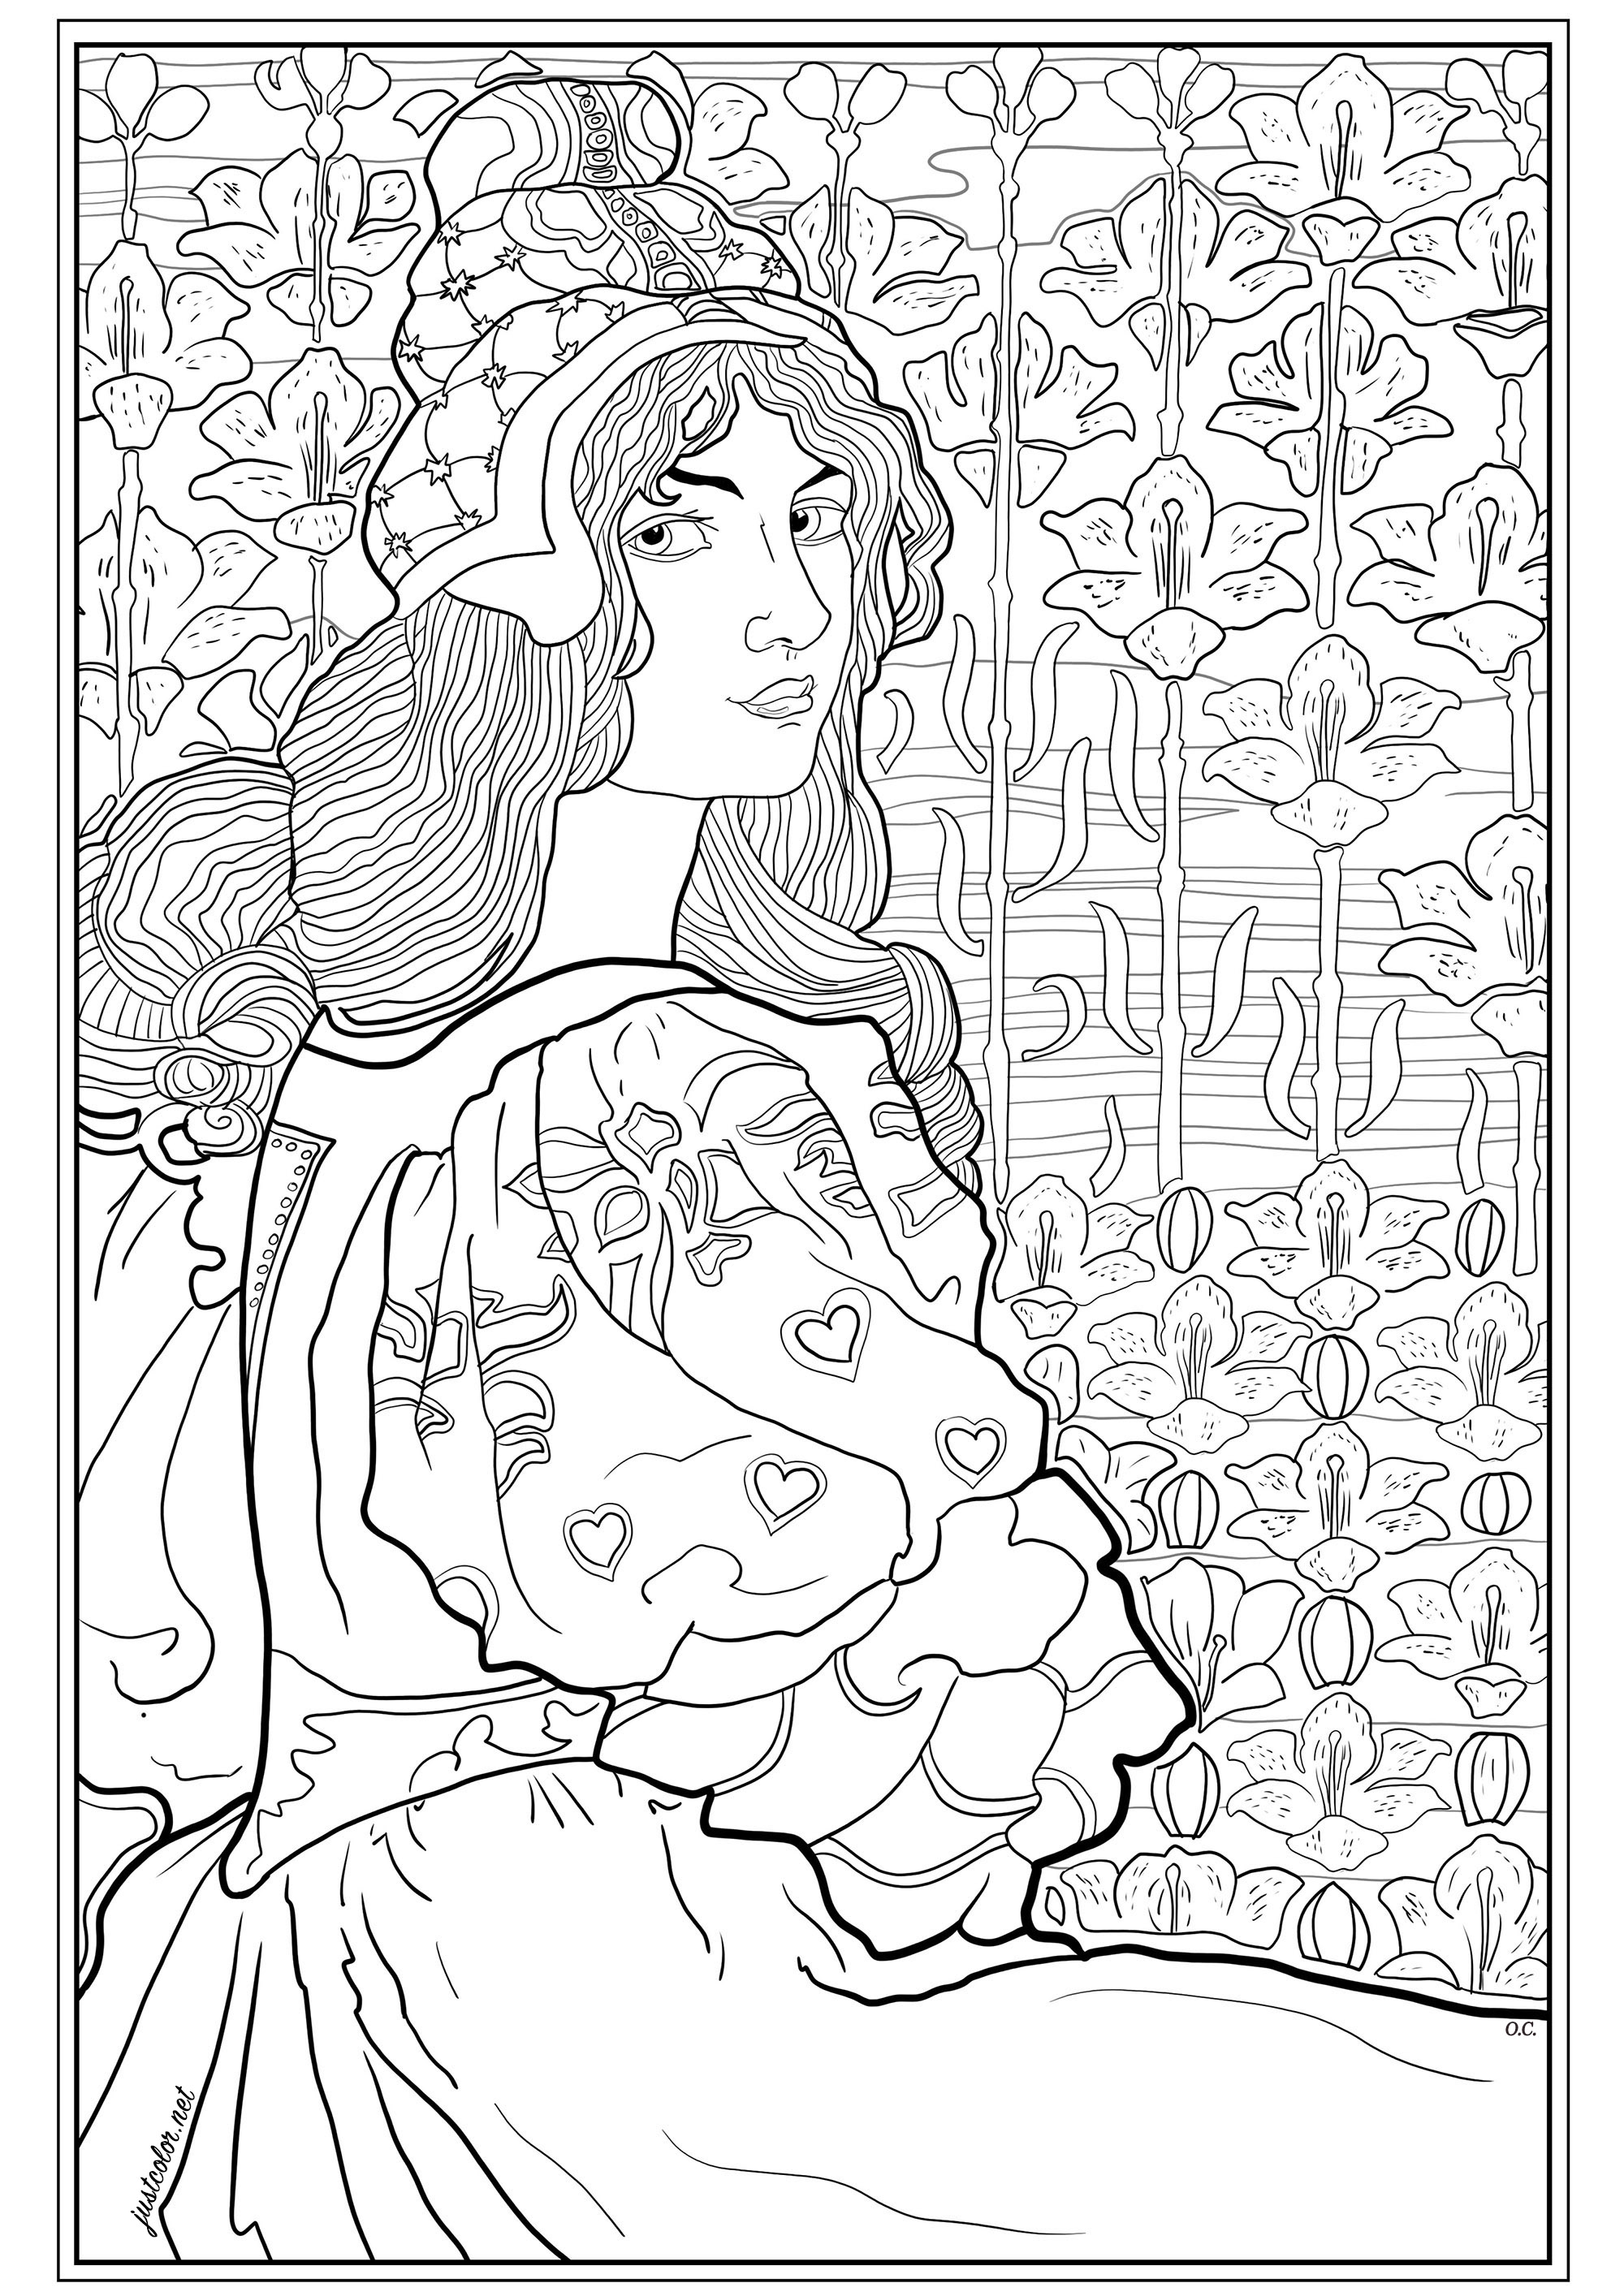 Coloração criada a partir de uma litografia original de Louis Rhead (1898). Esta ilustração, publicada para L'Estampe Moderne, mostra Jane, uma jovem mulher de cabelo comprido, num fundo de lírios estilizados.